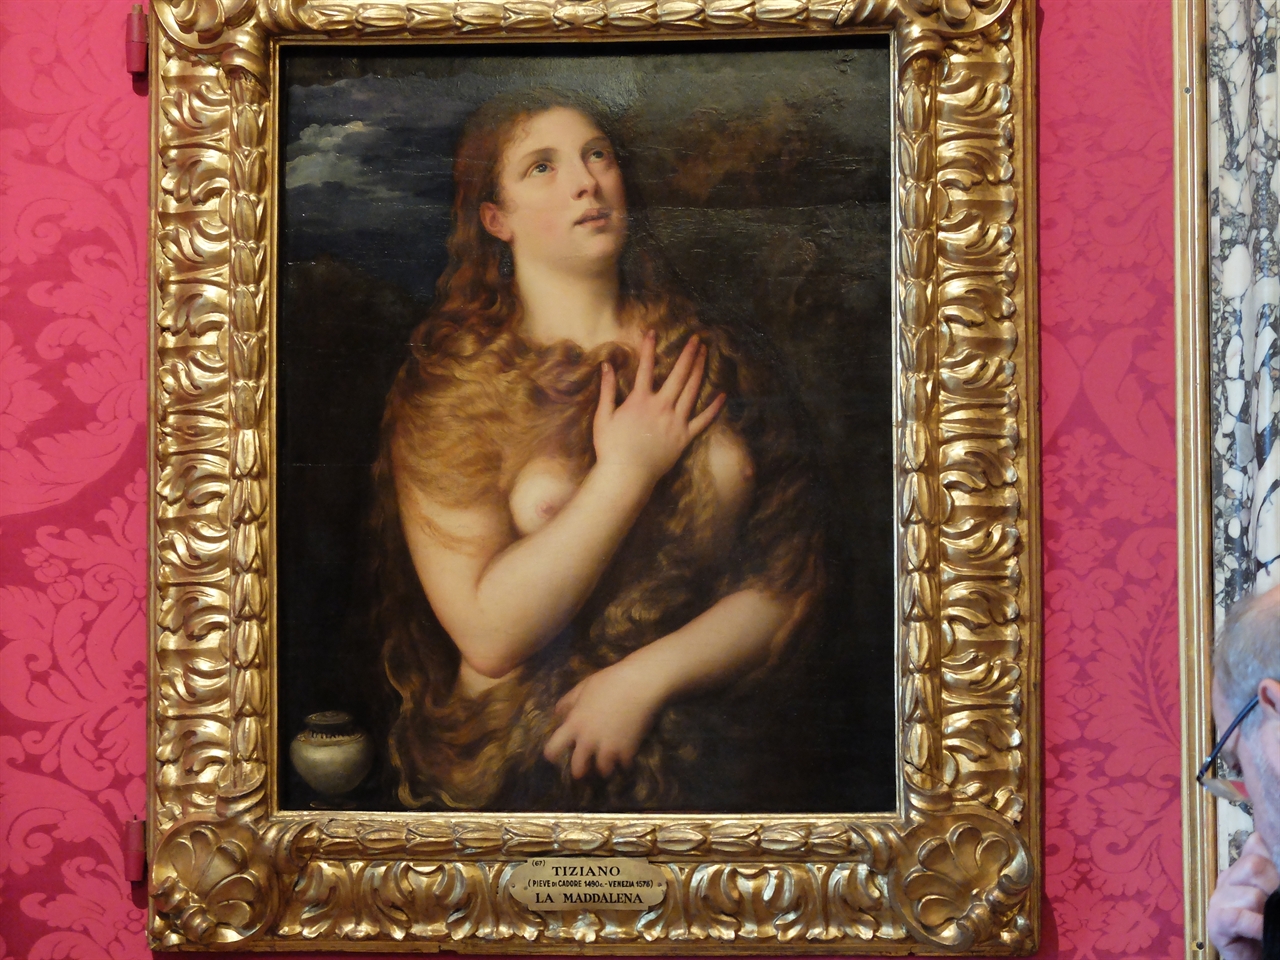 티치아노, '막달레나 마리아', 피렌체 팔라티나미술관. 발표 당시에 성녀를 너무 관능적으로 묘사했다고 해서 많은 논란을 불러일으키기도 한 작품입니다.